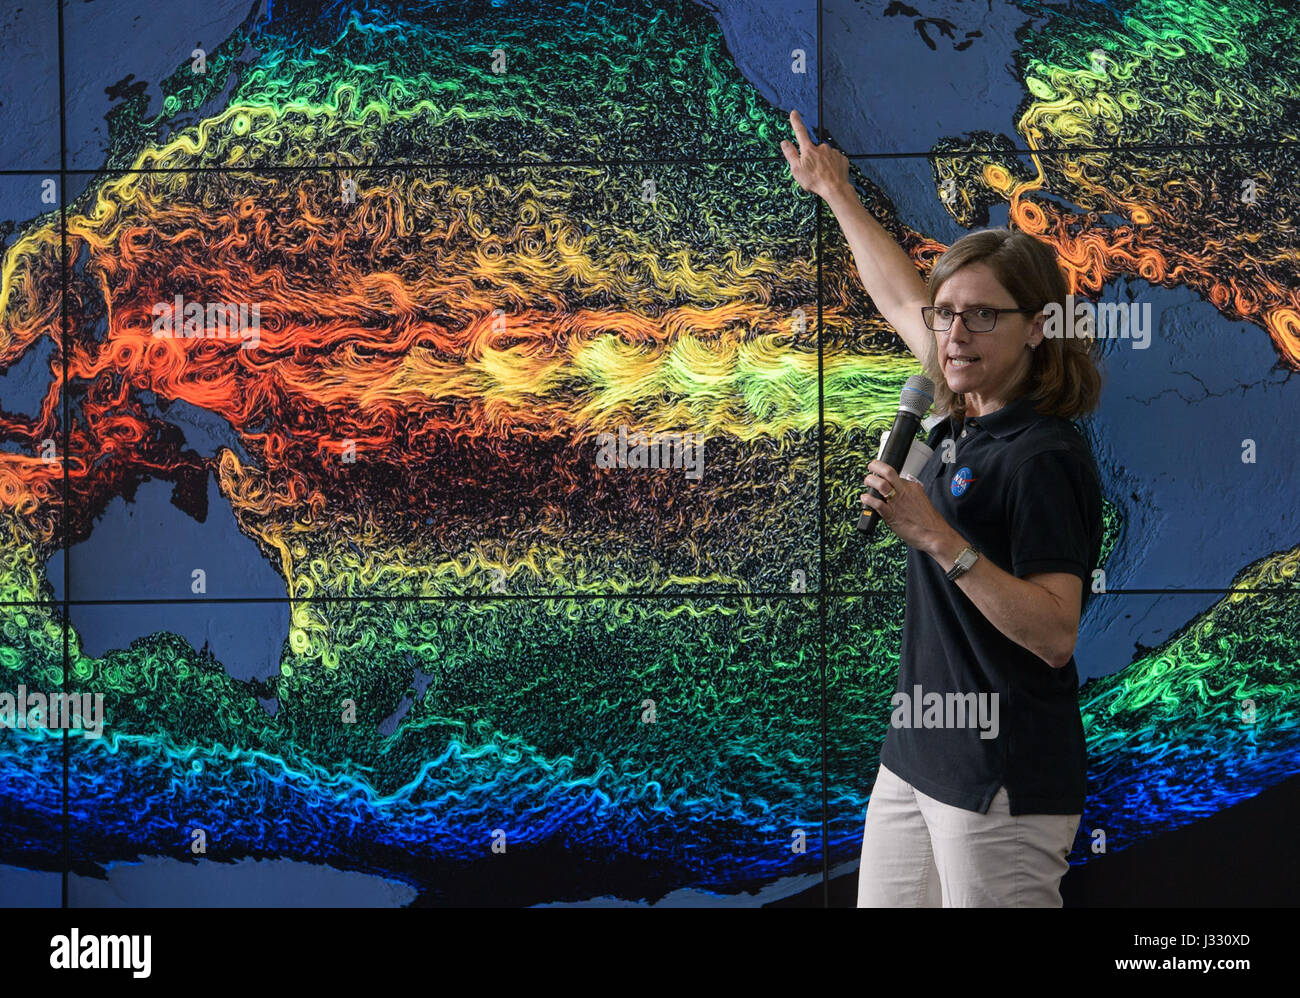 Stephanie Uz, eine Forschung Ozeanograph am NASA Goddard Raumfahrt Center spricht über das Leben im Pazifischen Ozean während der NASA Earth Day-Veranstaltung am Donnerstag, 20. April 2017 an der Union Station in Washington, D.C. Stockfoto